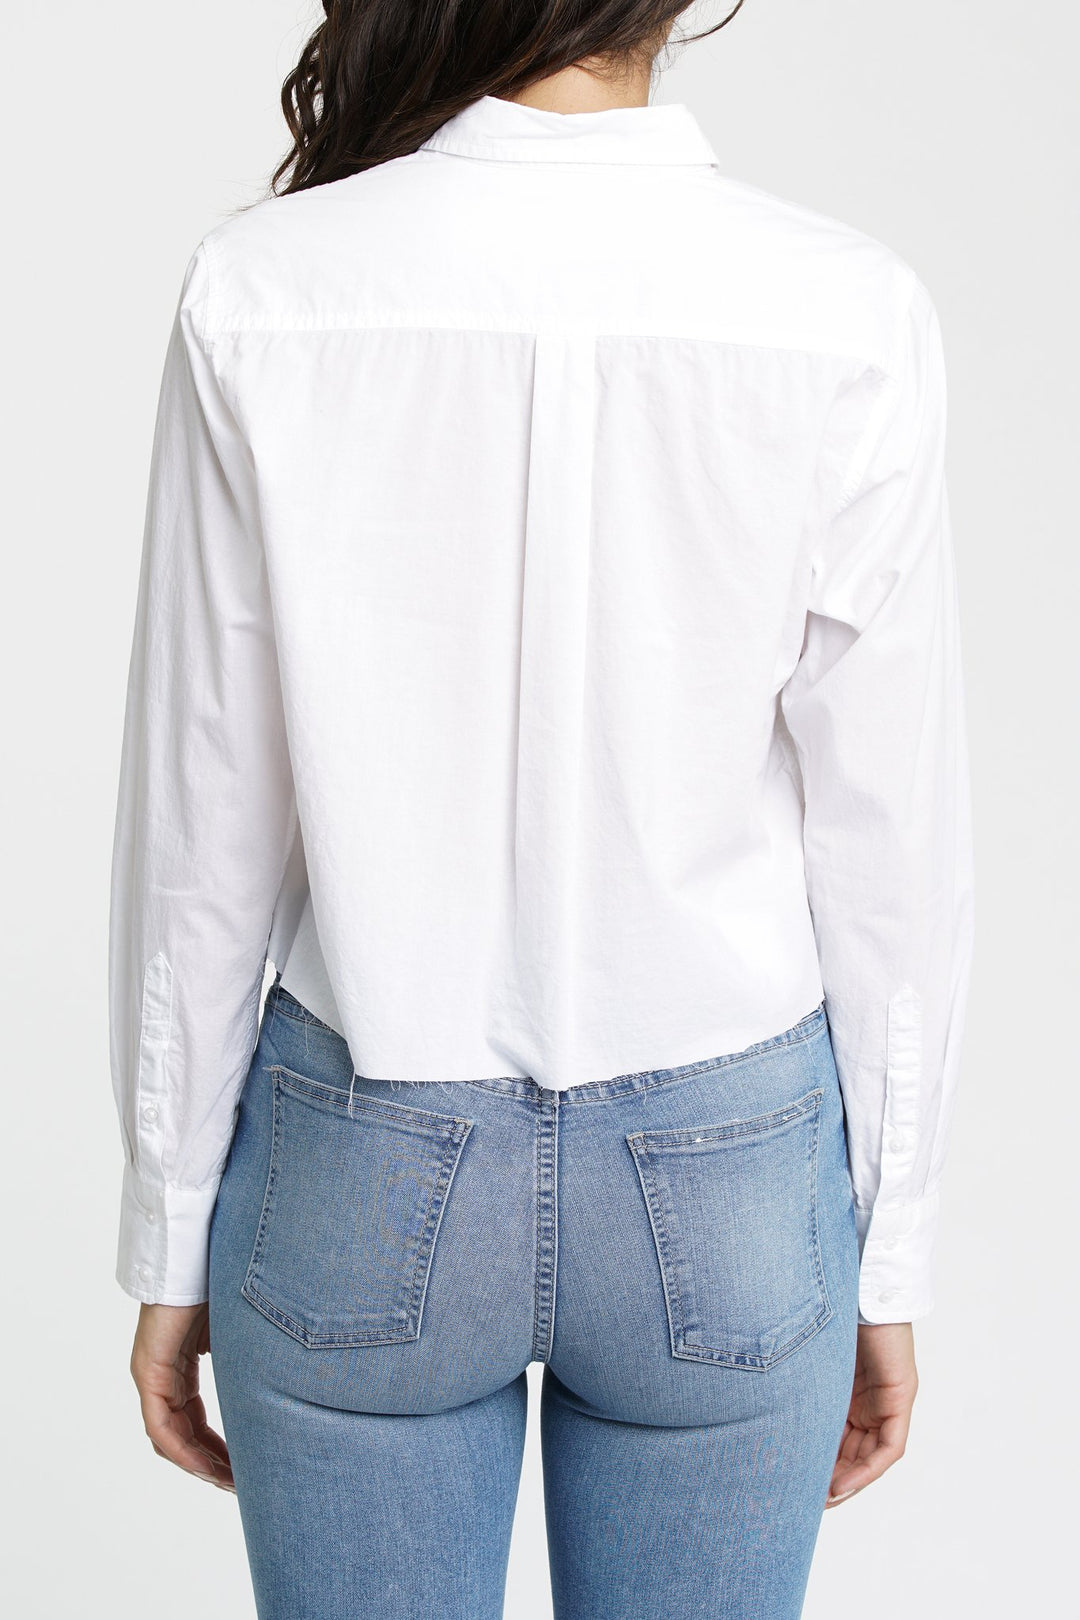 PISTOLA - Sloane Long Sleeve Cropped Poplin Shirt in Blanc